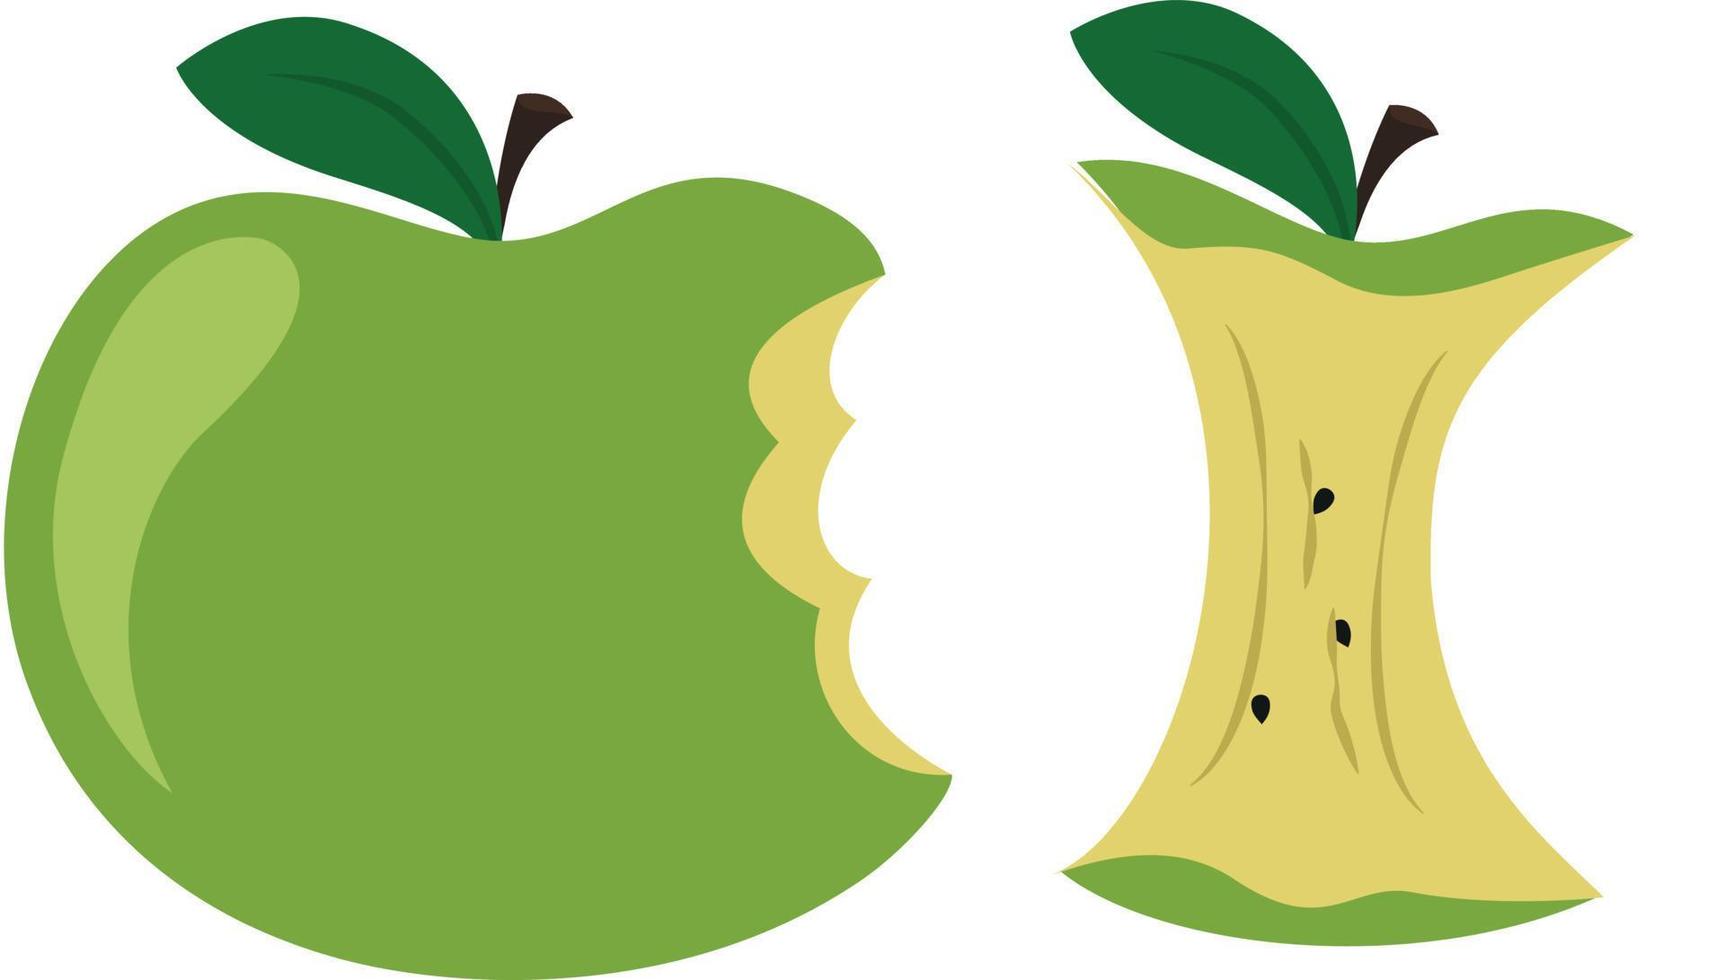 groen gebeten appel, vers sappig appel kern en kuilen vector